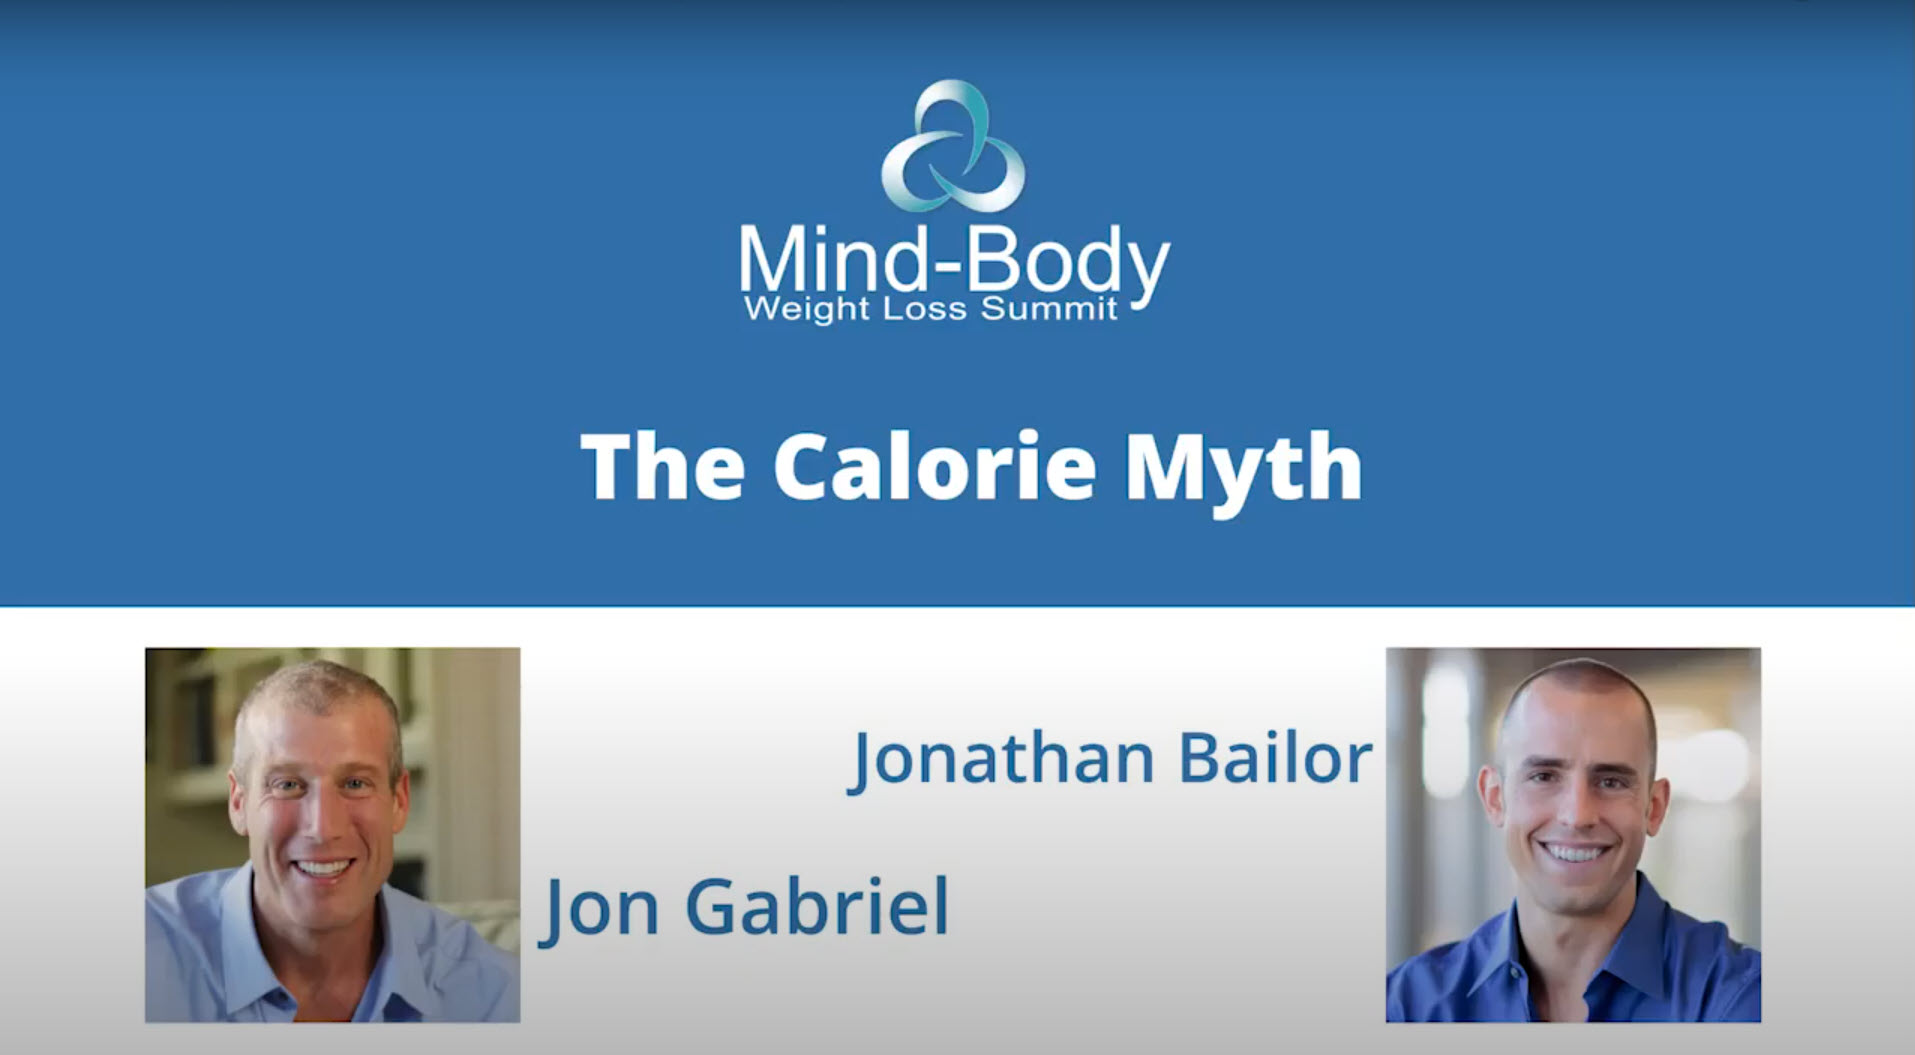 The Calorie Myth with Jonathan Bailor